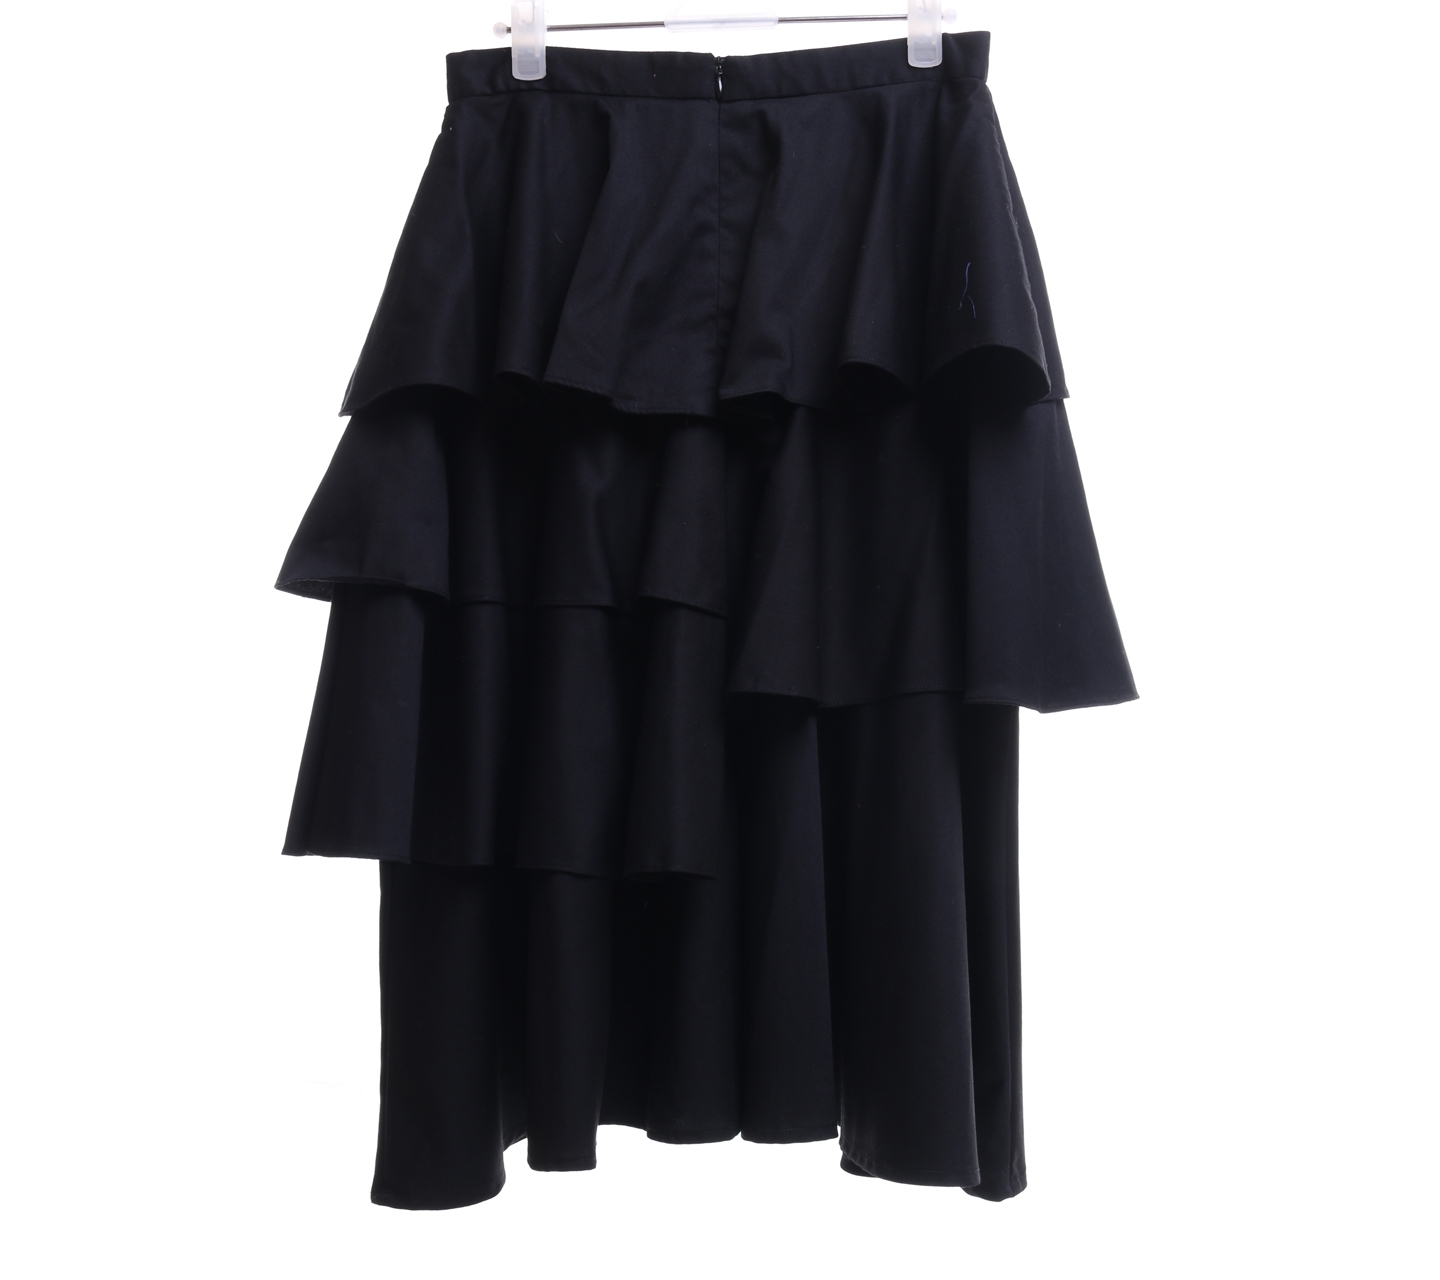 I.K.Y.K Black Midi Skirt